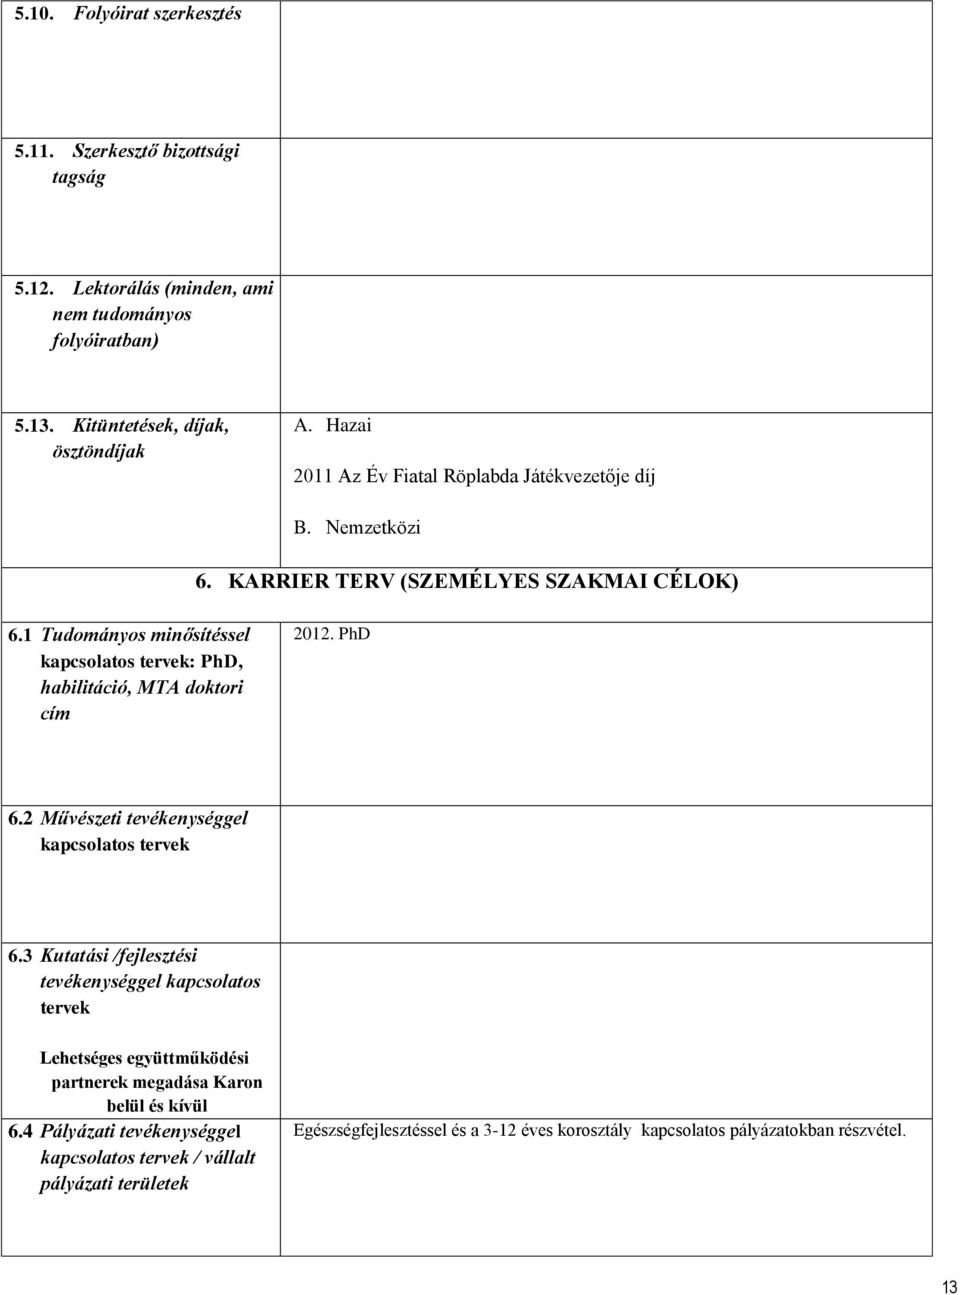 1 Tudományos minősítéssel kapcsolatos tervek: PhD, habilitáció, MTA doktori cím 2012. PhD 6.2 Művészeti tevékenységgel kapcsolatos tervek 6.